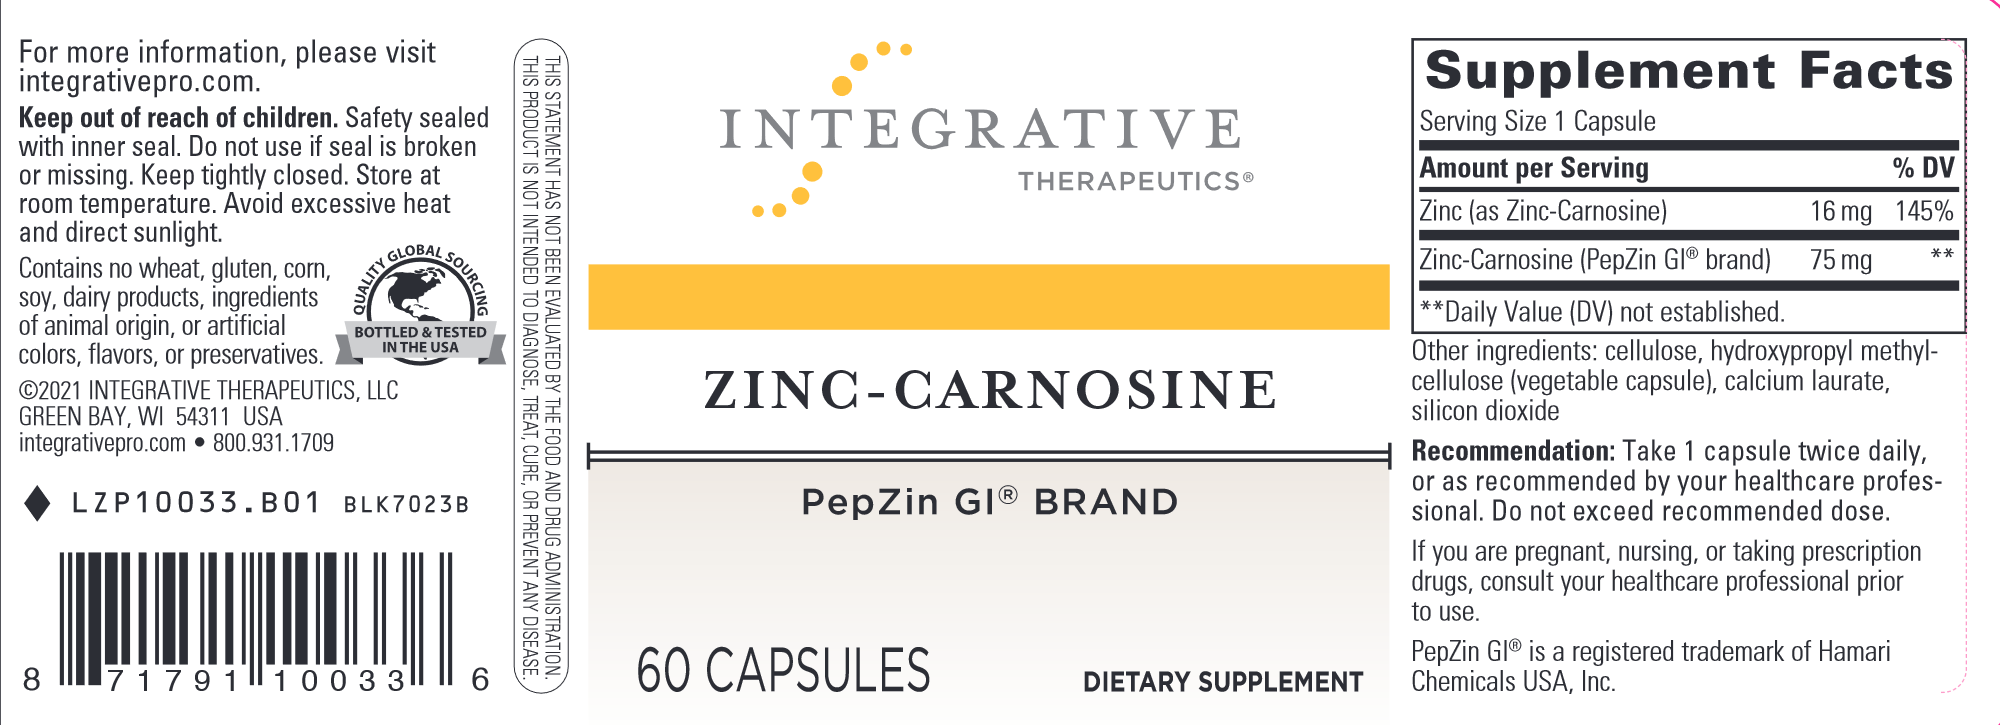 Zinc-Carnosine